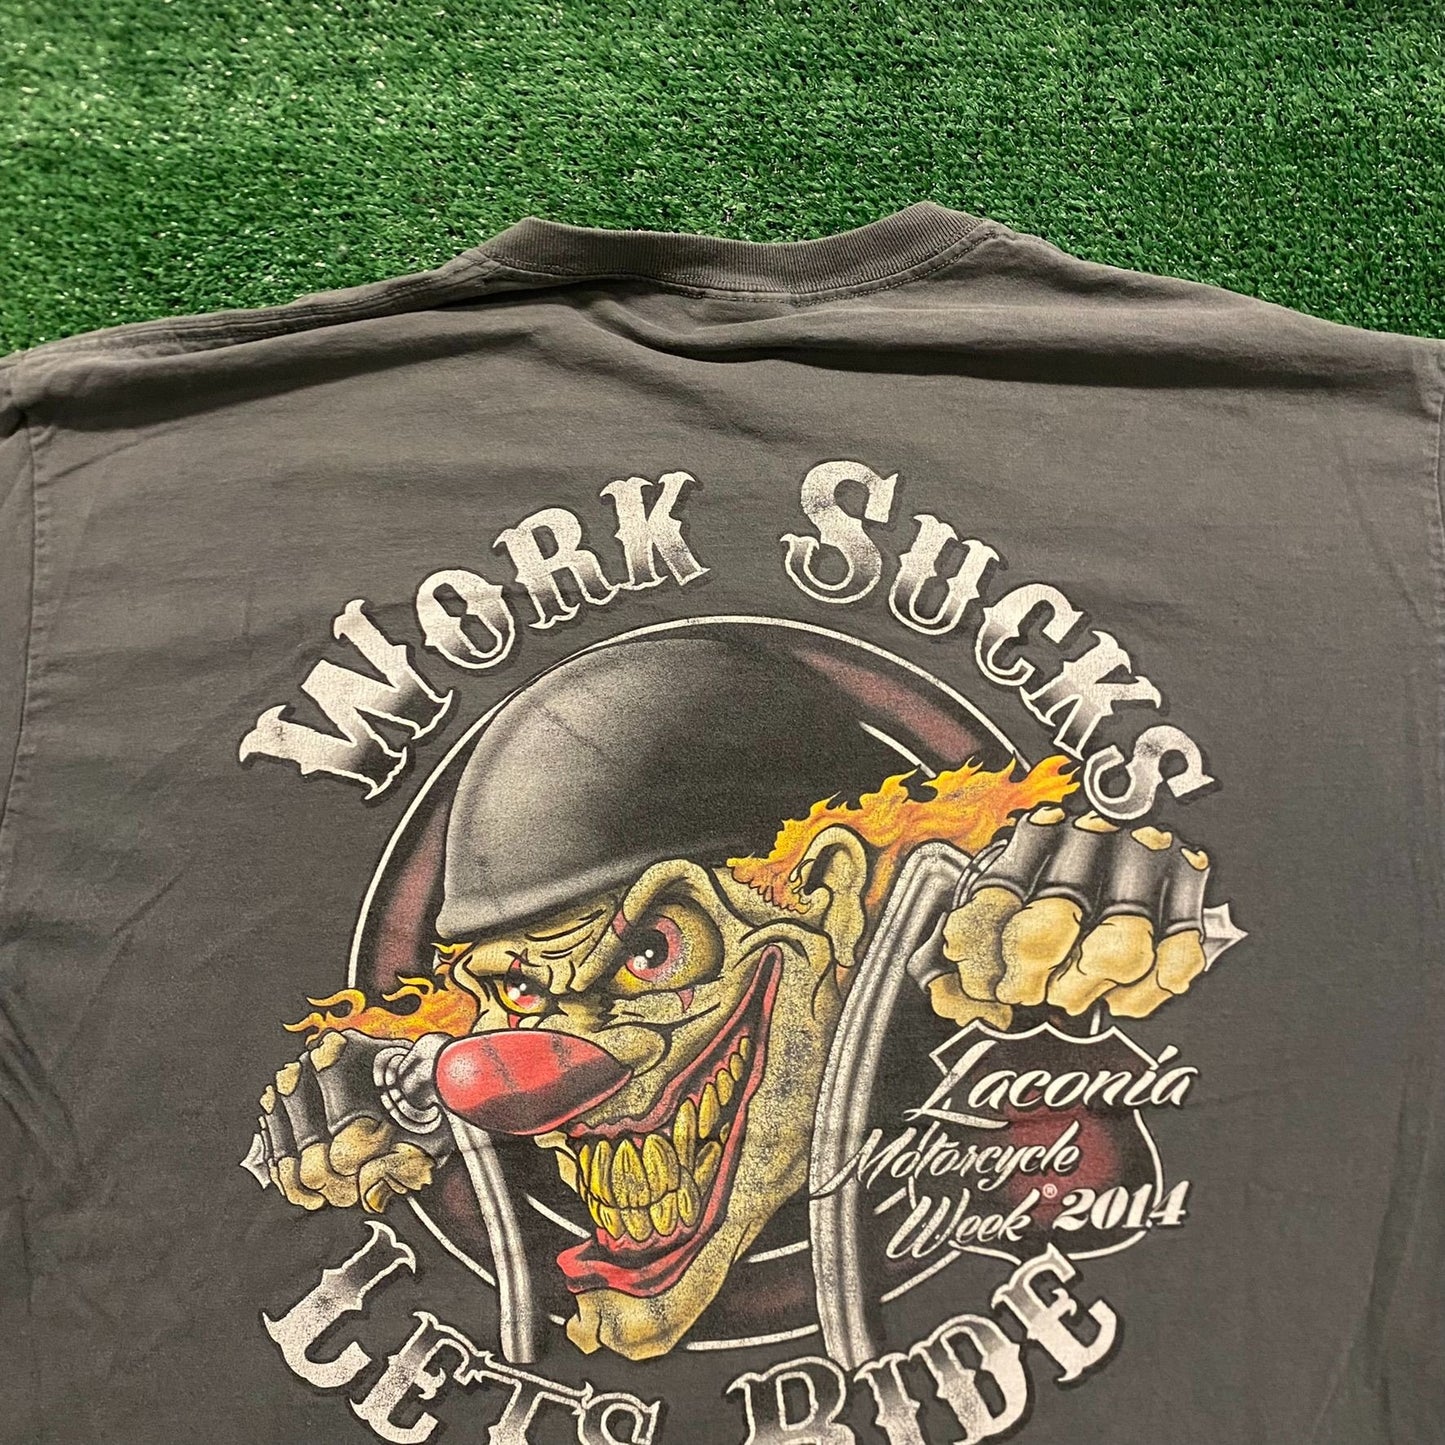 Motorcycle Bike Week Clown Vintage Biker Grunge T-Shirt